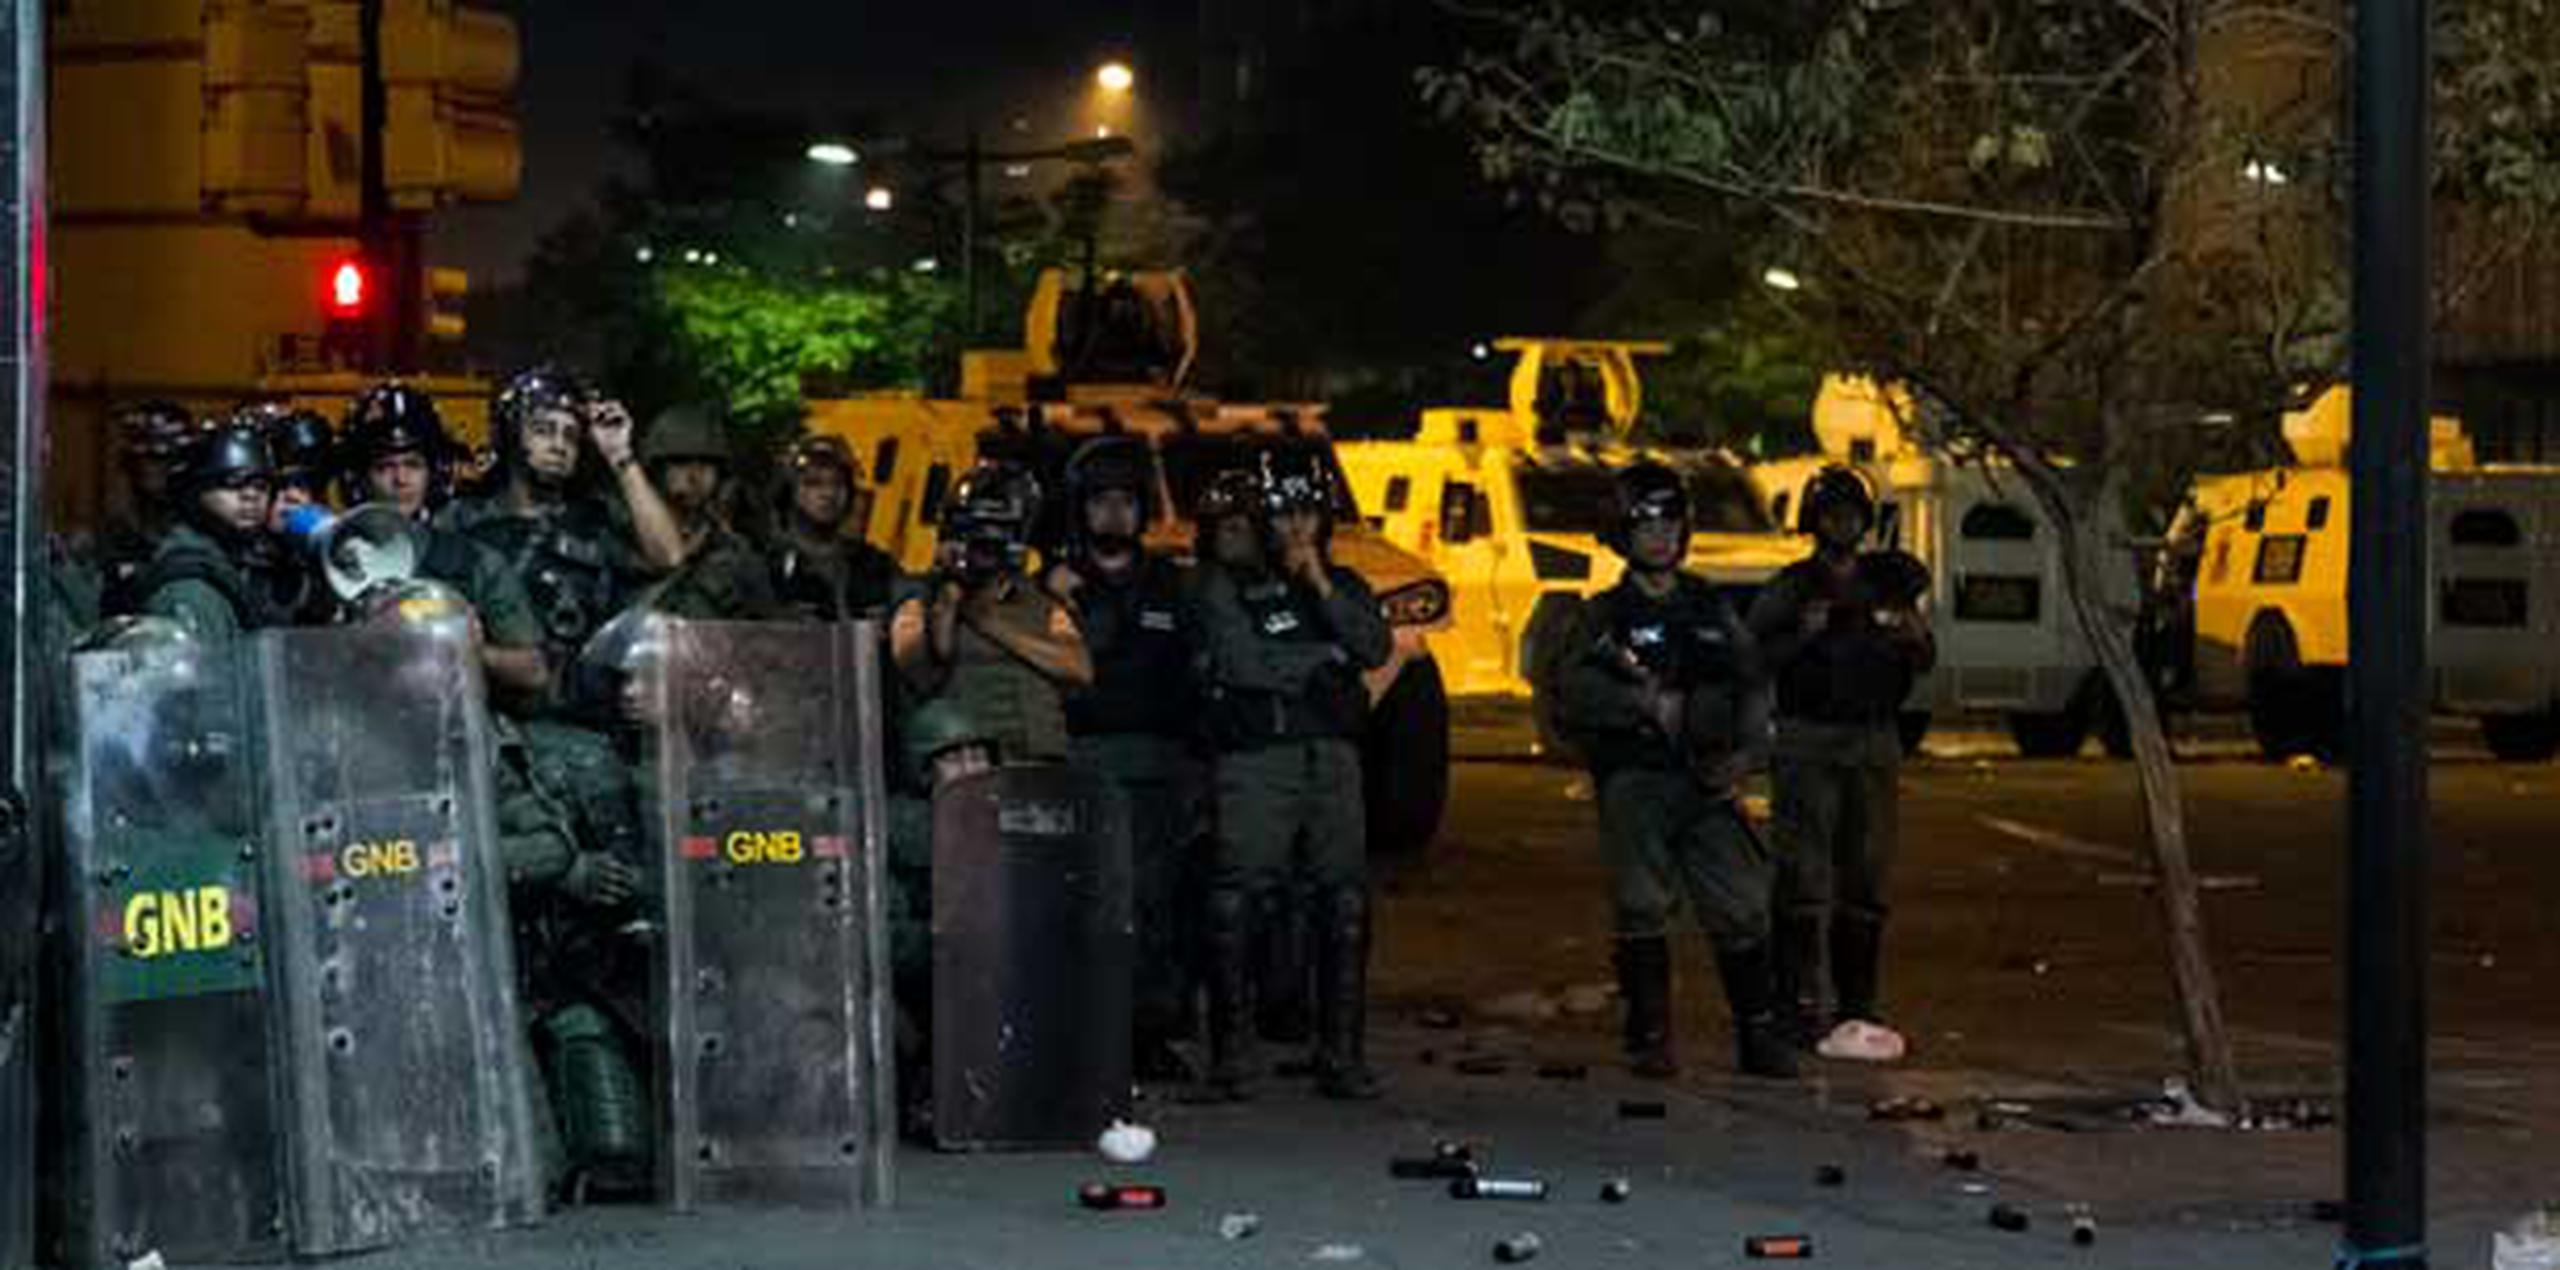 Según la versión digital del diario La Verdad de Maracaibo, Annese, estudiante de 33 años de Ciencias Políticas, murió por balas disparadas supuestamente por agentes policiales que poco antes del amanecer llegaron al lugar para levantar la barricada. (Miguel Gutierrez / Agencia EFE)